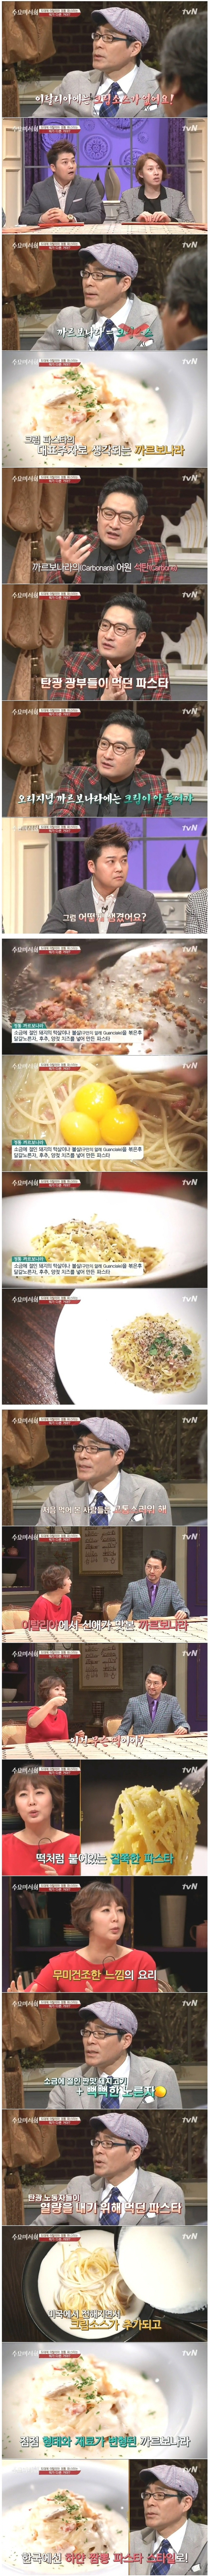 이탈리아에는 크림소스가 없다고? 한국 사람들이 이탈리아 가서 실망하는 요리!